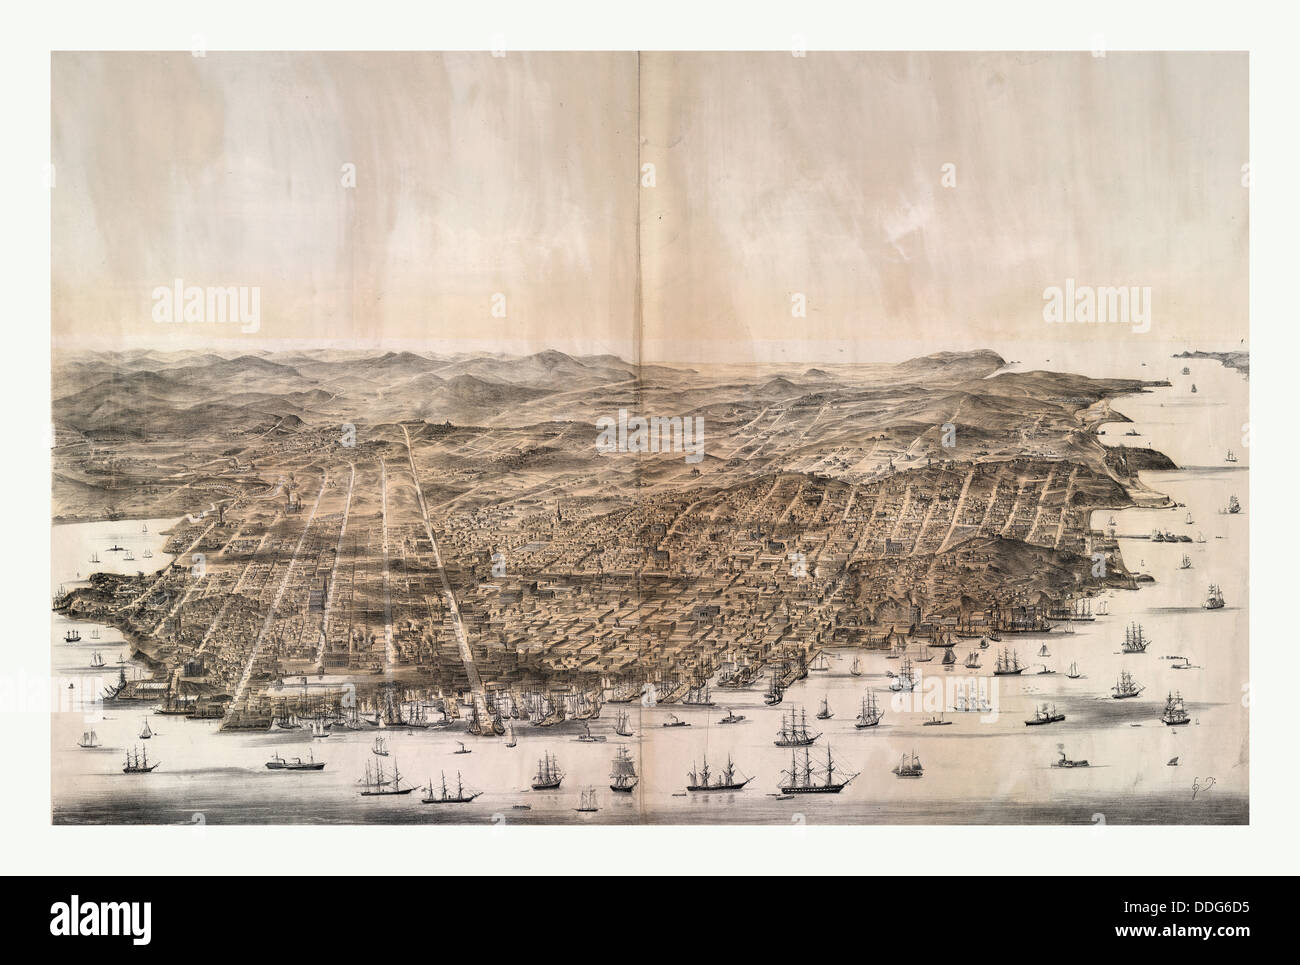 Vue d'ensemble de San Francisco, en Californie, du au-dessus de la baie à l'ouest par Charles B Gifford, US, USA, Amérique Latine Banque D'Images